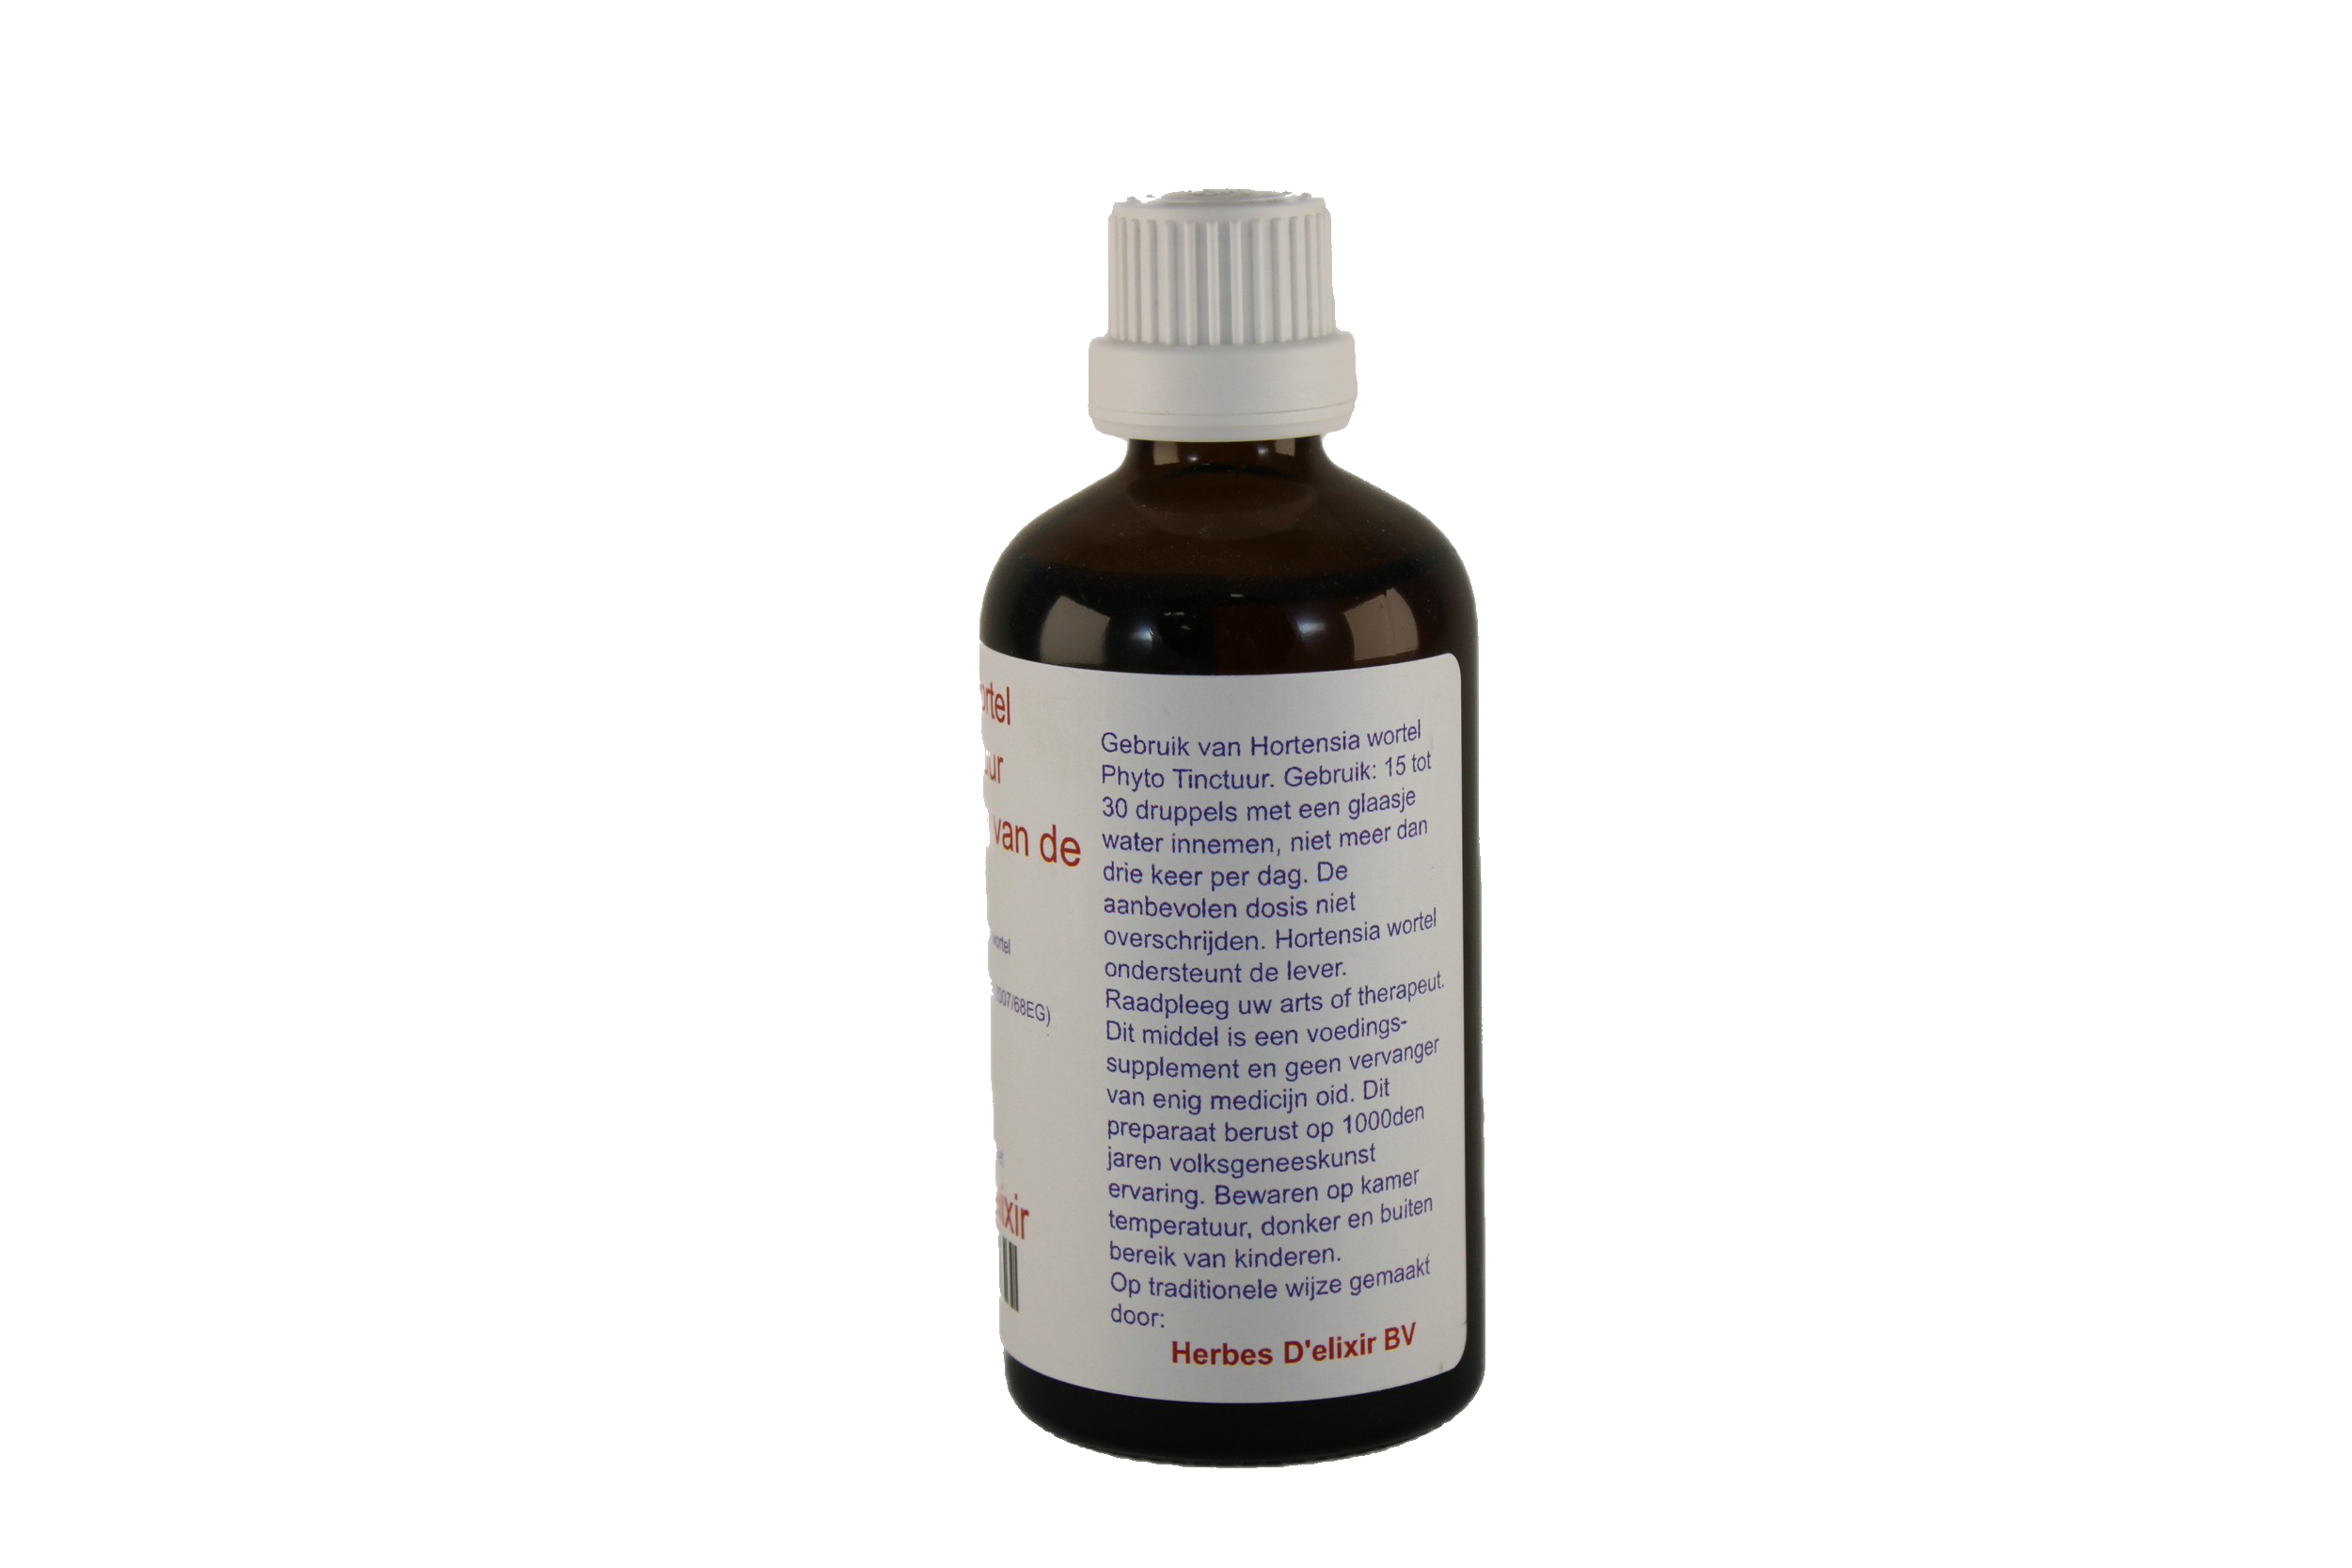 Hortensia wortel tinctuur - 100 ml - Herbes D'elixir